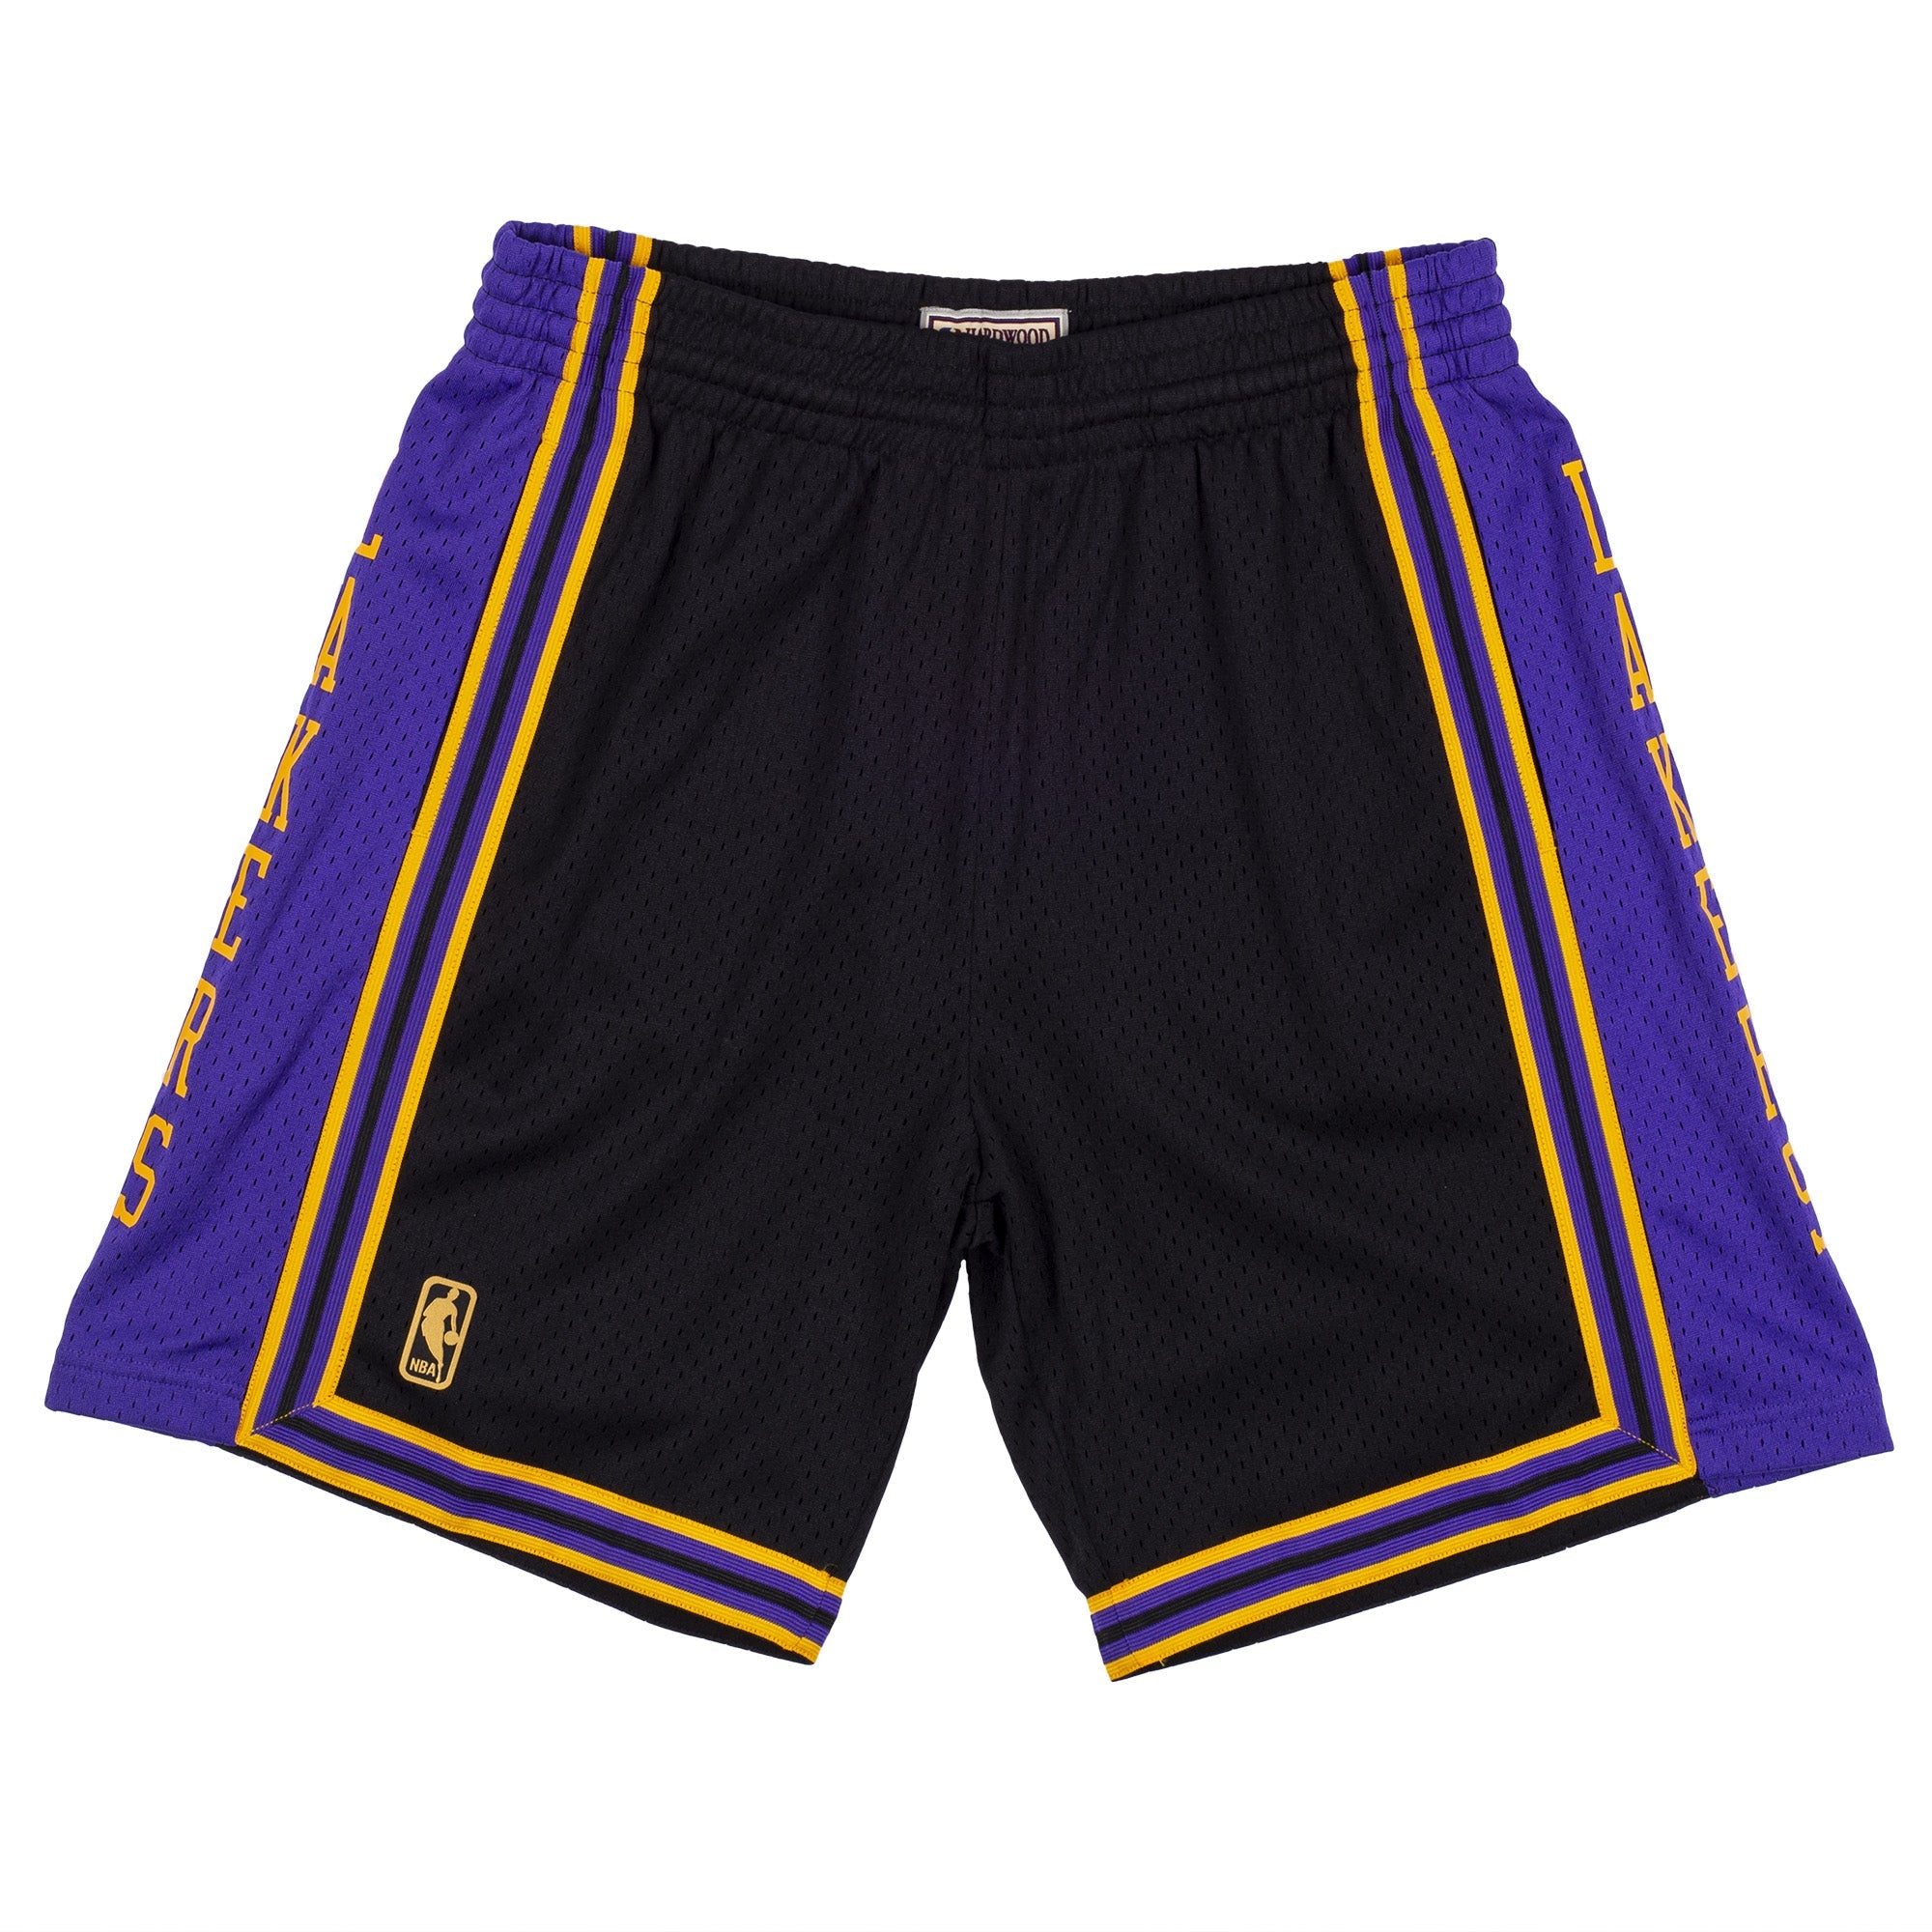  Los Angeles Lakers Shorts